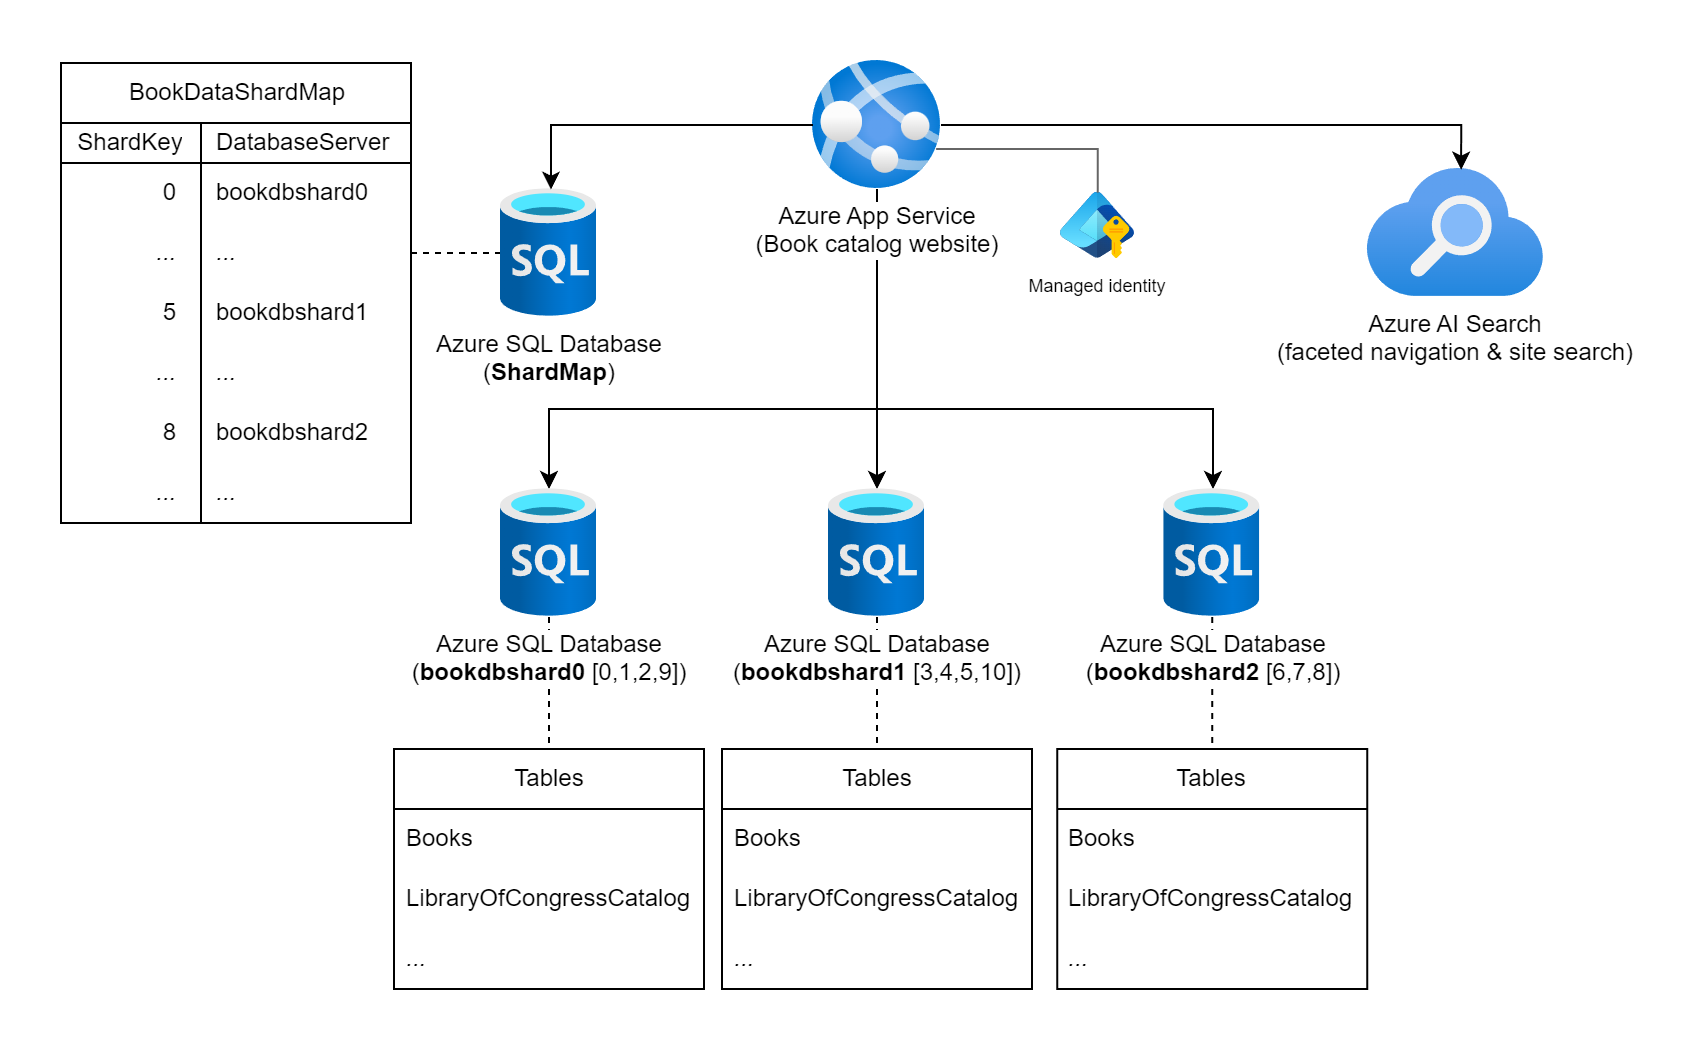 Azure 앱 서비스, 4개의 Azure SQL Database 및 1개의 Azure AI Search를 보여 주는 다이어그램